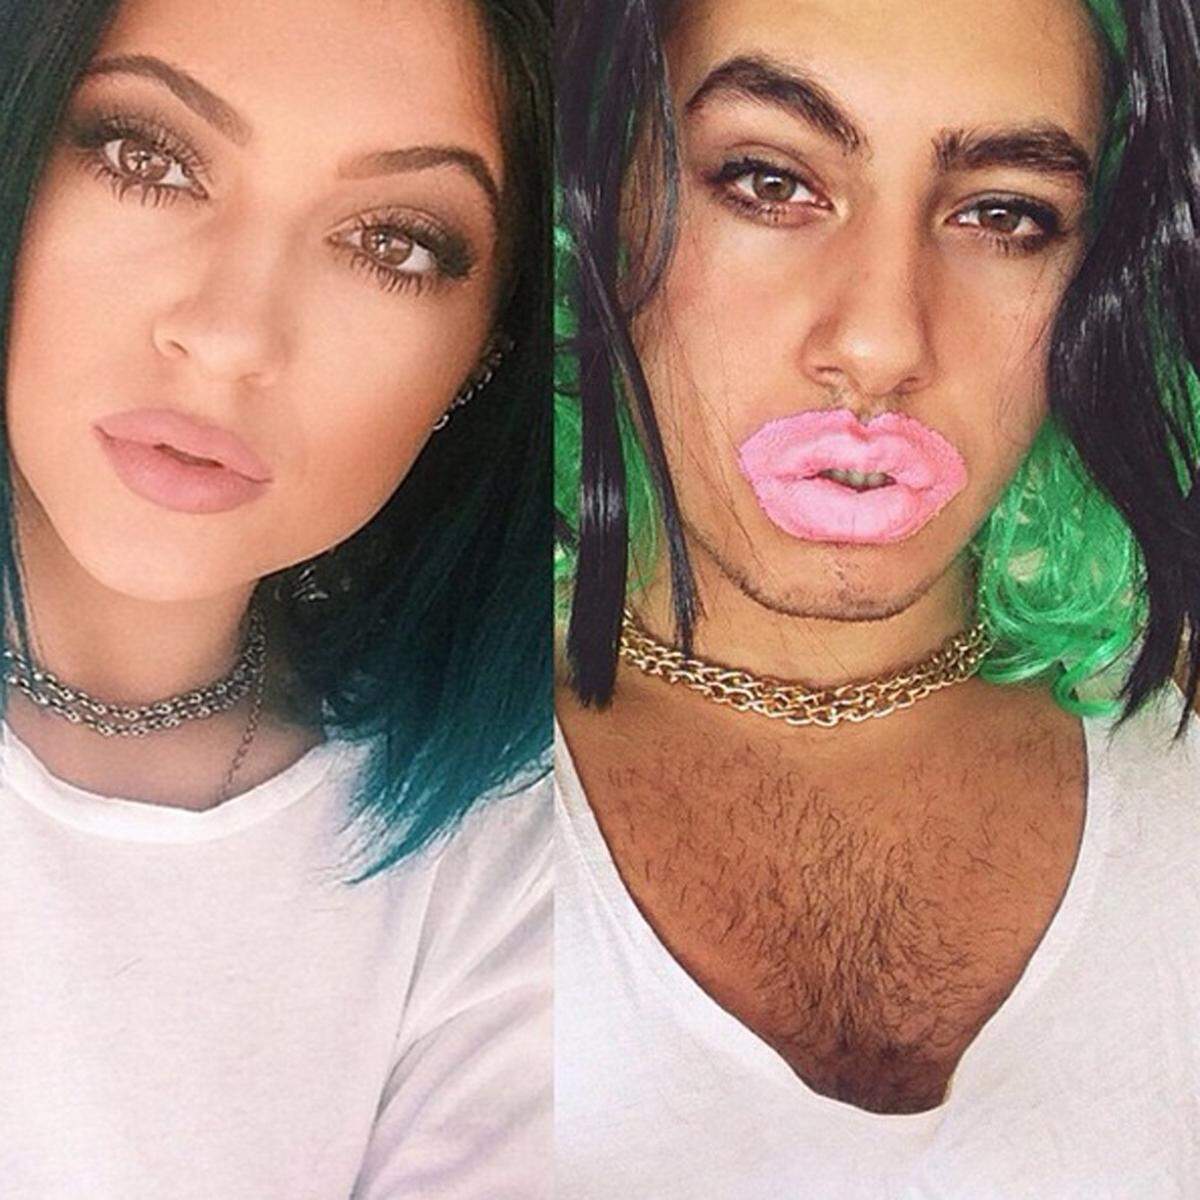 Gerges möchte mit seinen Bildern Stars im neuen Licht zeigen und auch auf den übermäßigen Einsatz von Photoshop aufmerksam machen. Kendall Jenner ließ sich bereits als Teenager die Lippen aufspritzen.